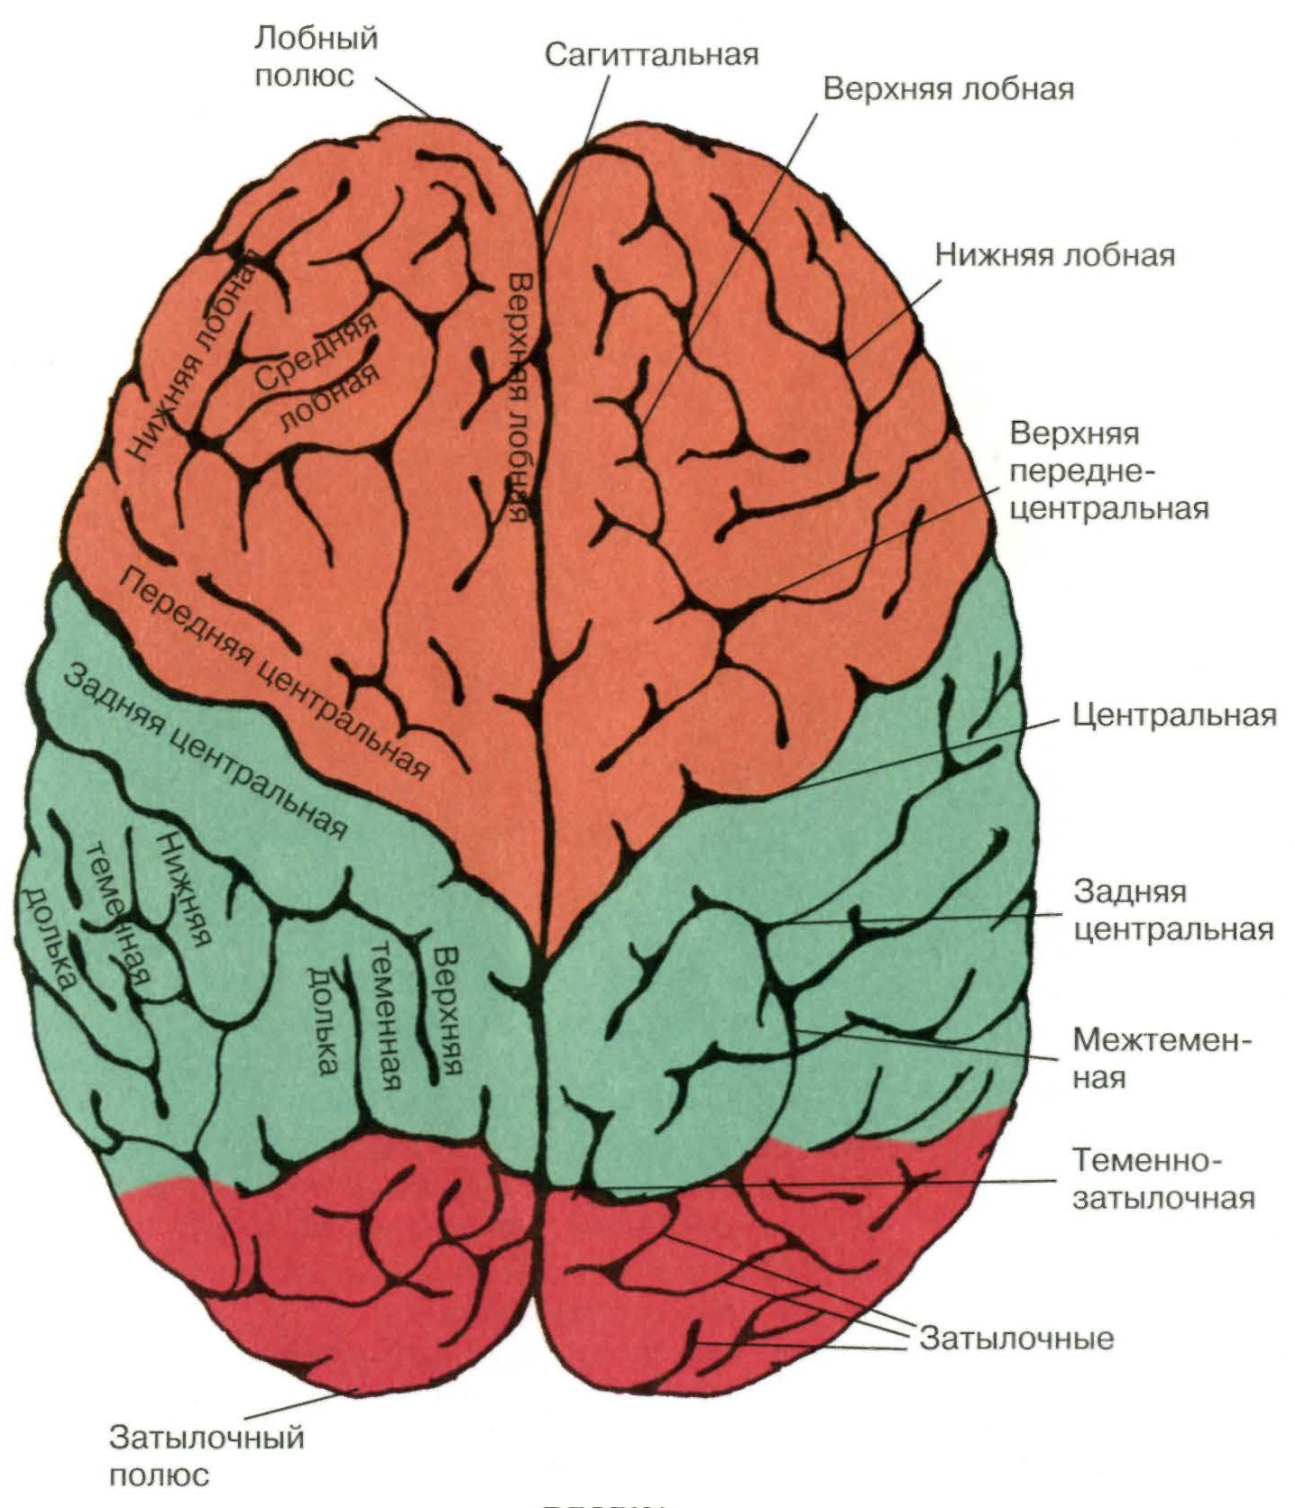 6 долей мозга. Нижний теменной отдел левого полушария. Лобная дога большого мозга. Строение лобной доли головного мозга.